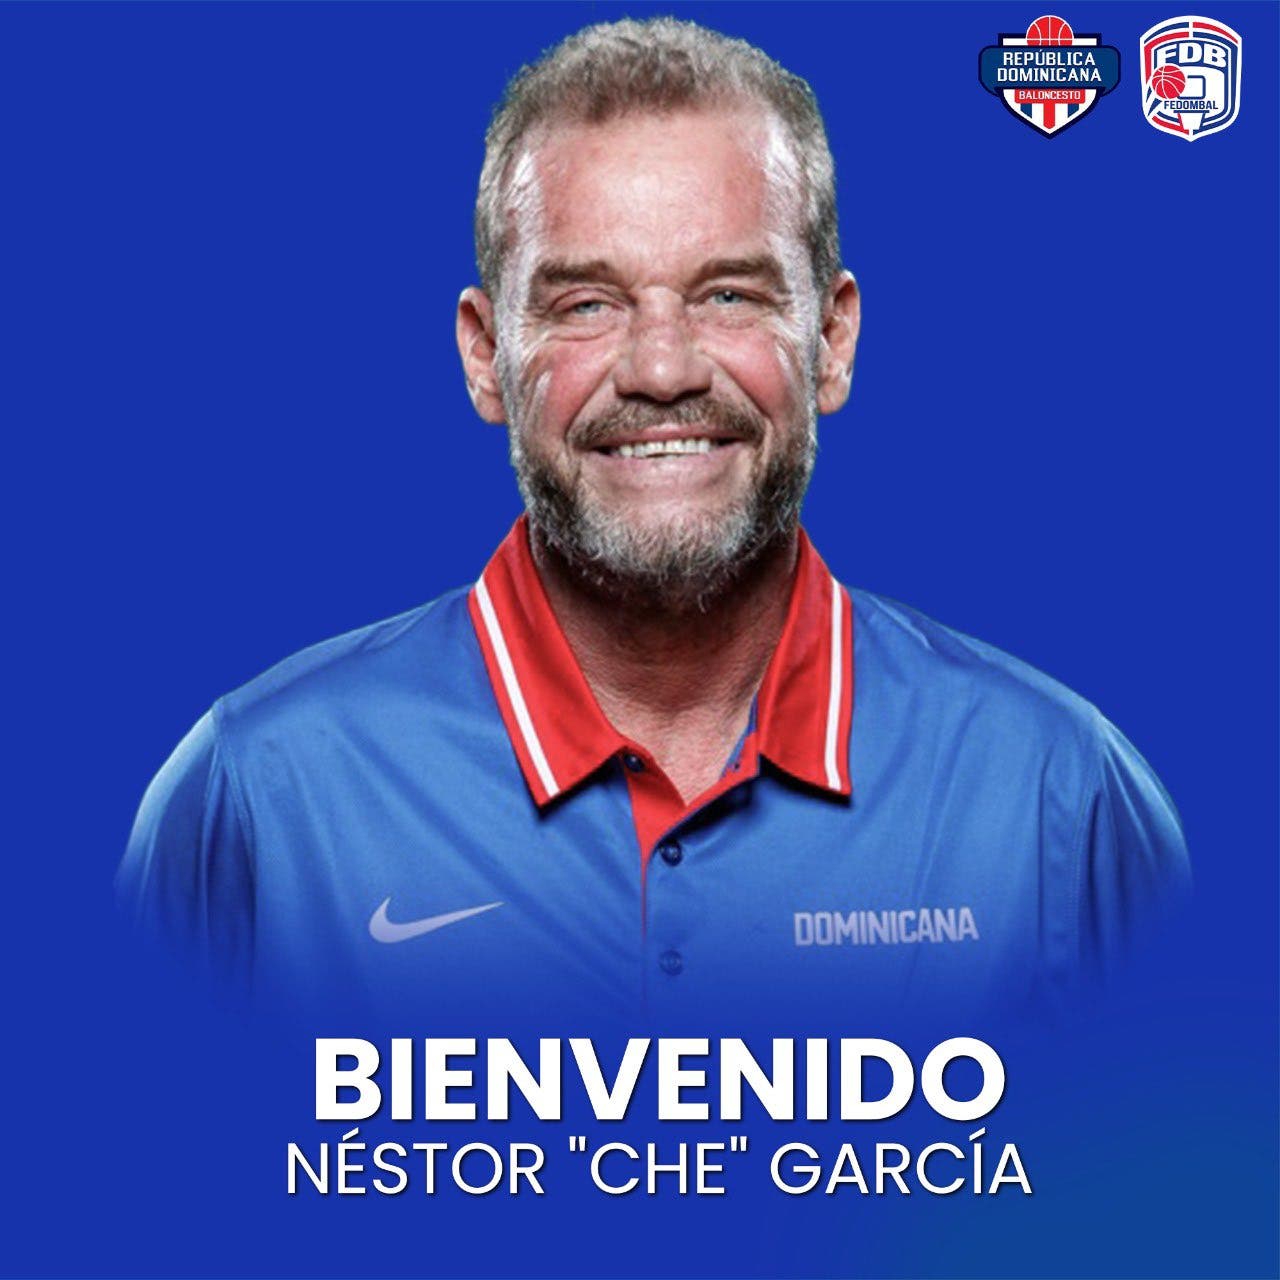 Néstor Che García es el nuevo entrenador de la Selección Nacional de Baloncesto